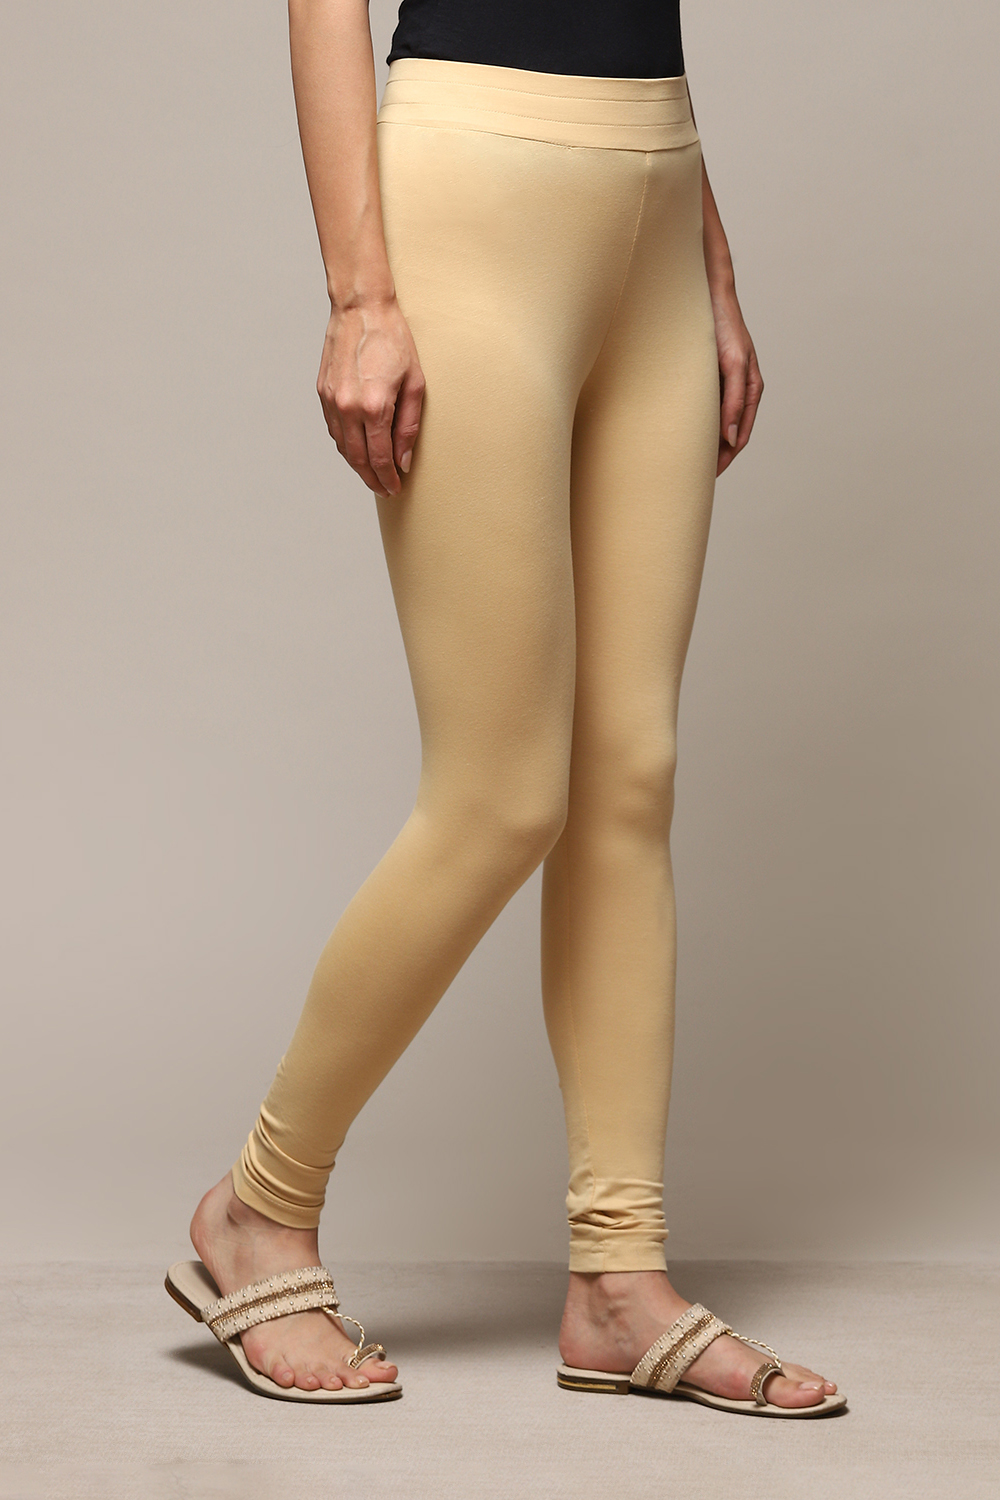 Buy Beige Leggings for Women by FIDATO Online